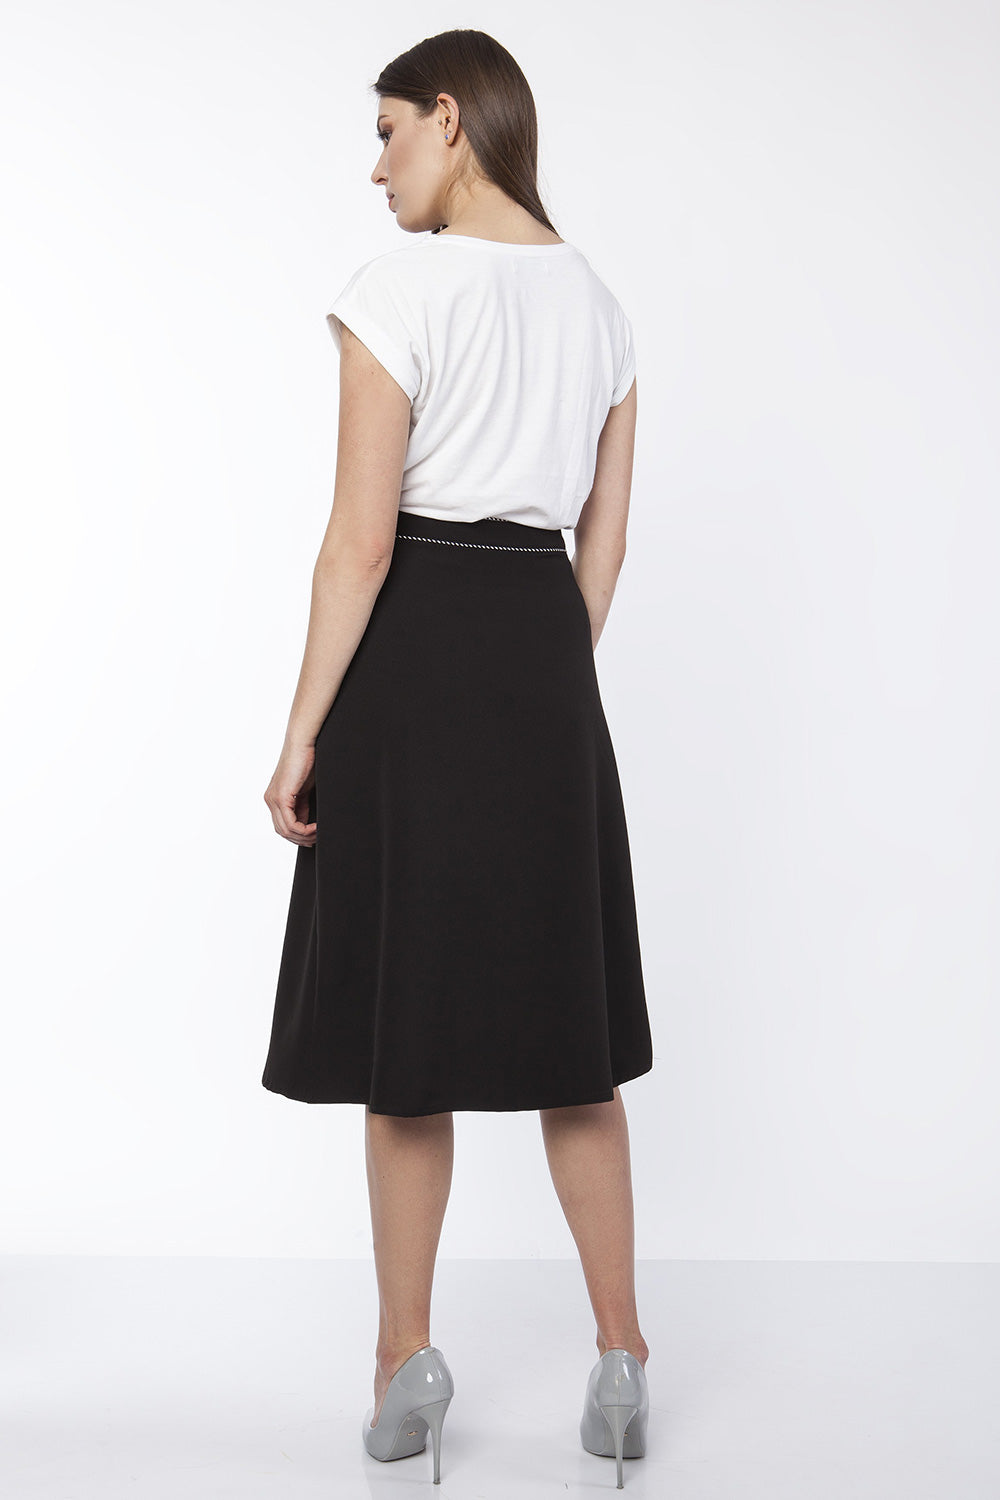 Skirt model 151199 Lanti